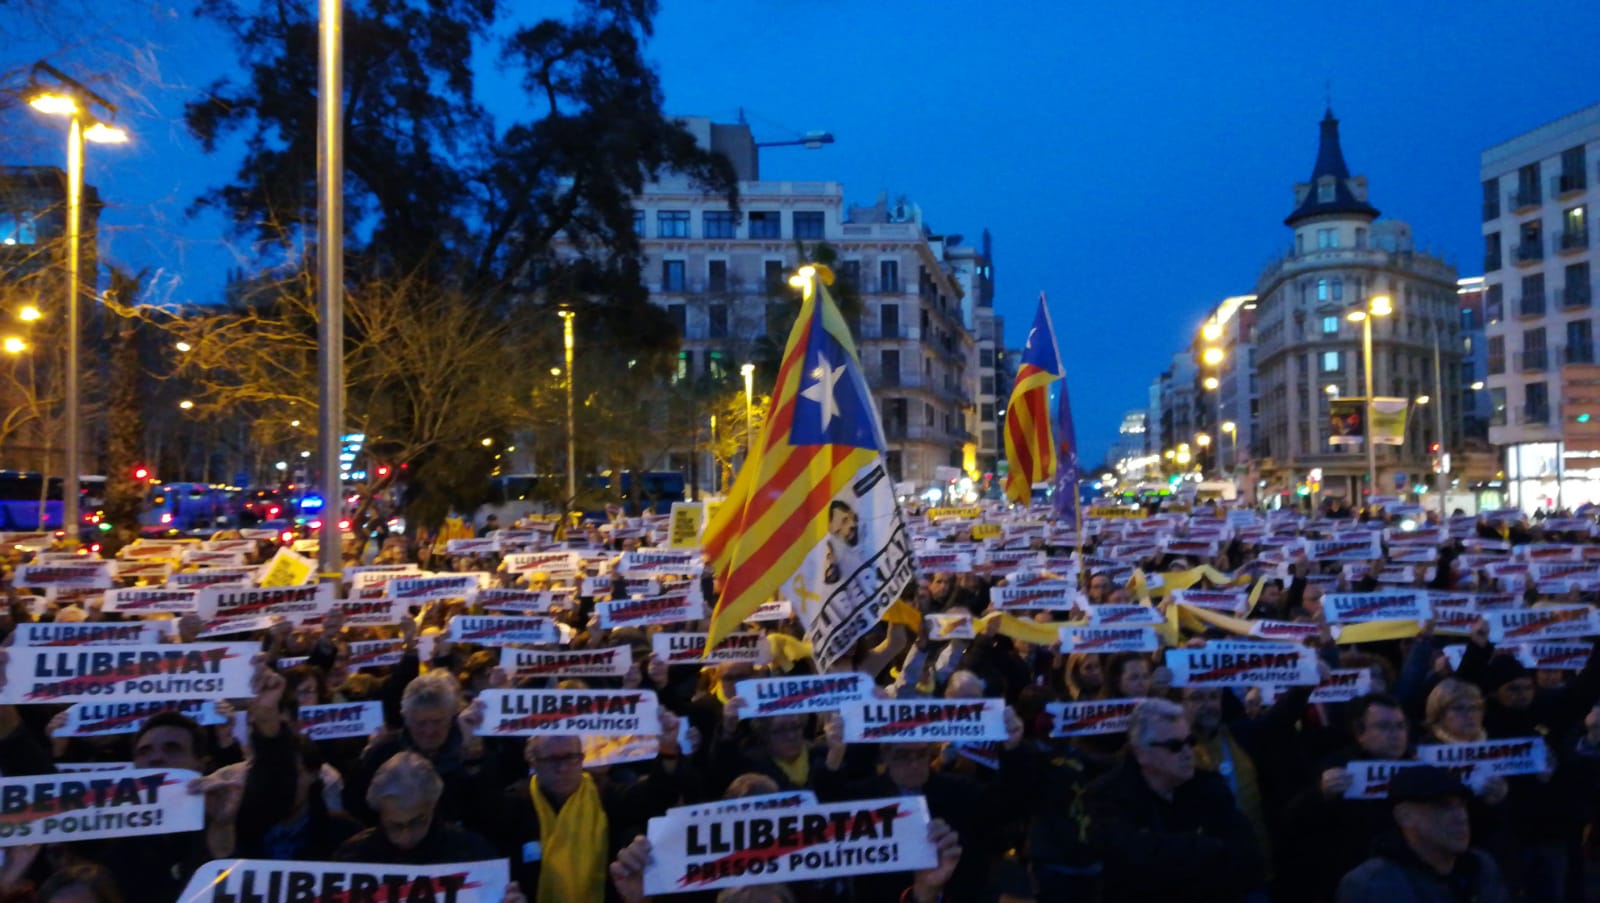 Exiles denounce repression five months after the 'Jordis' were imprisoned